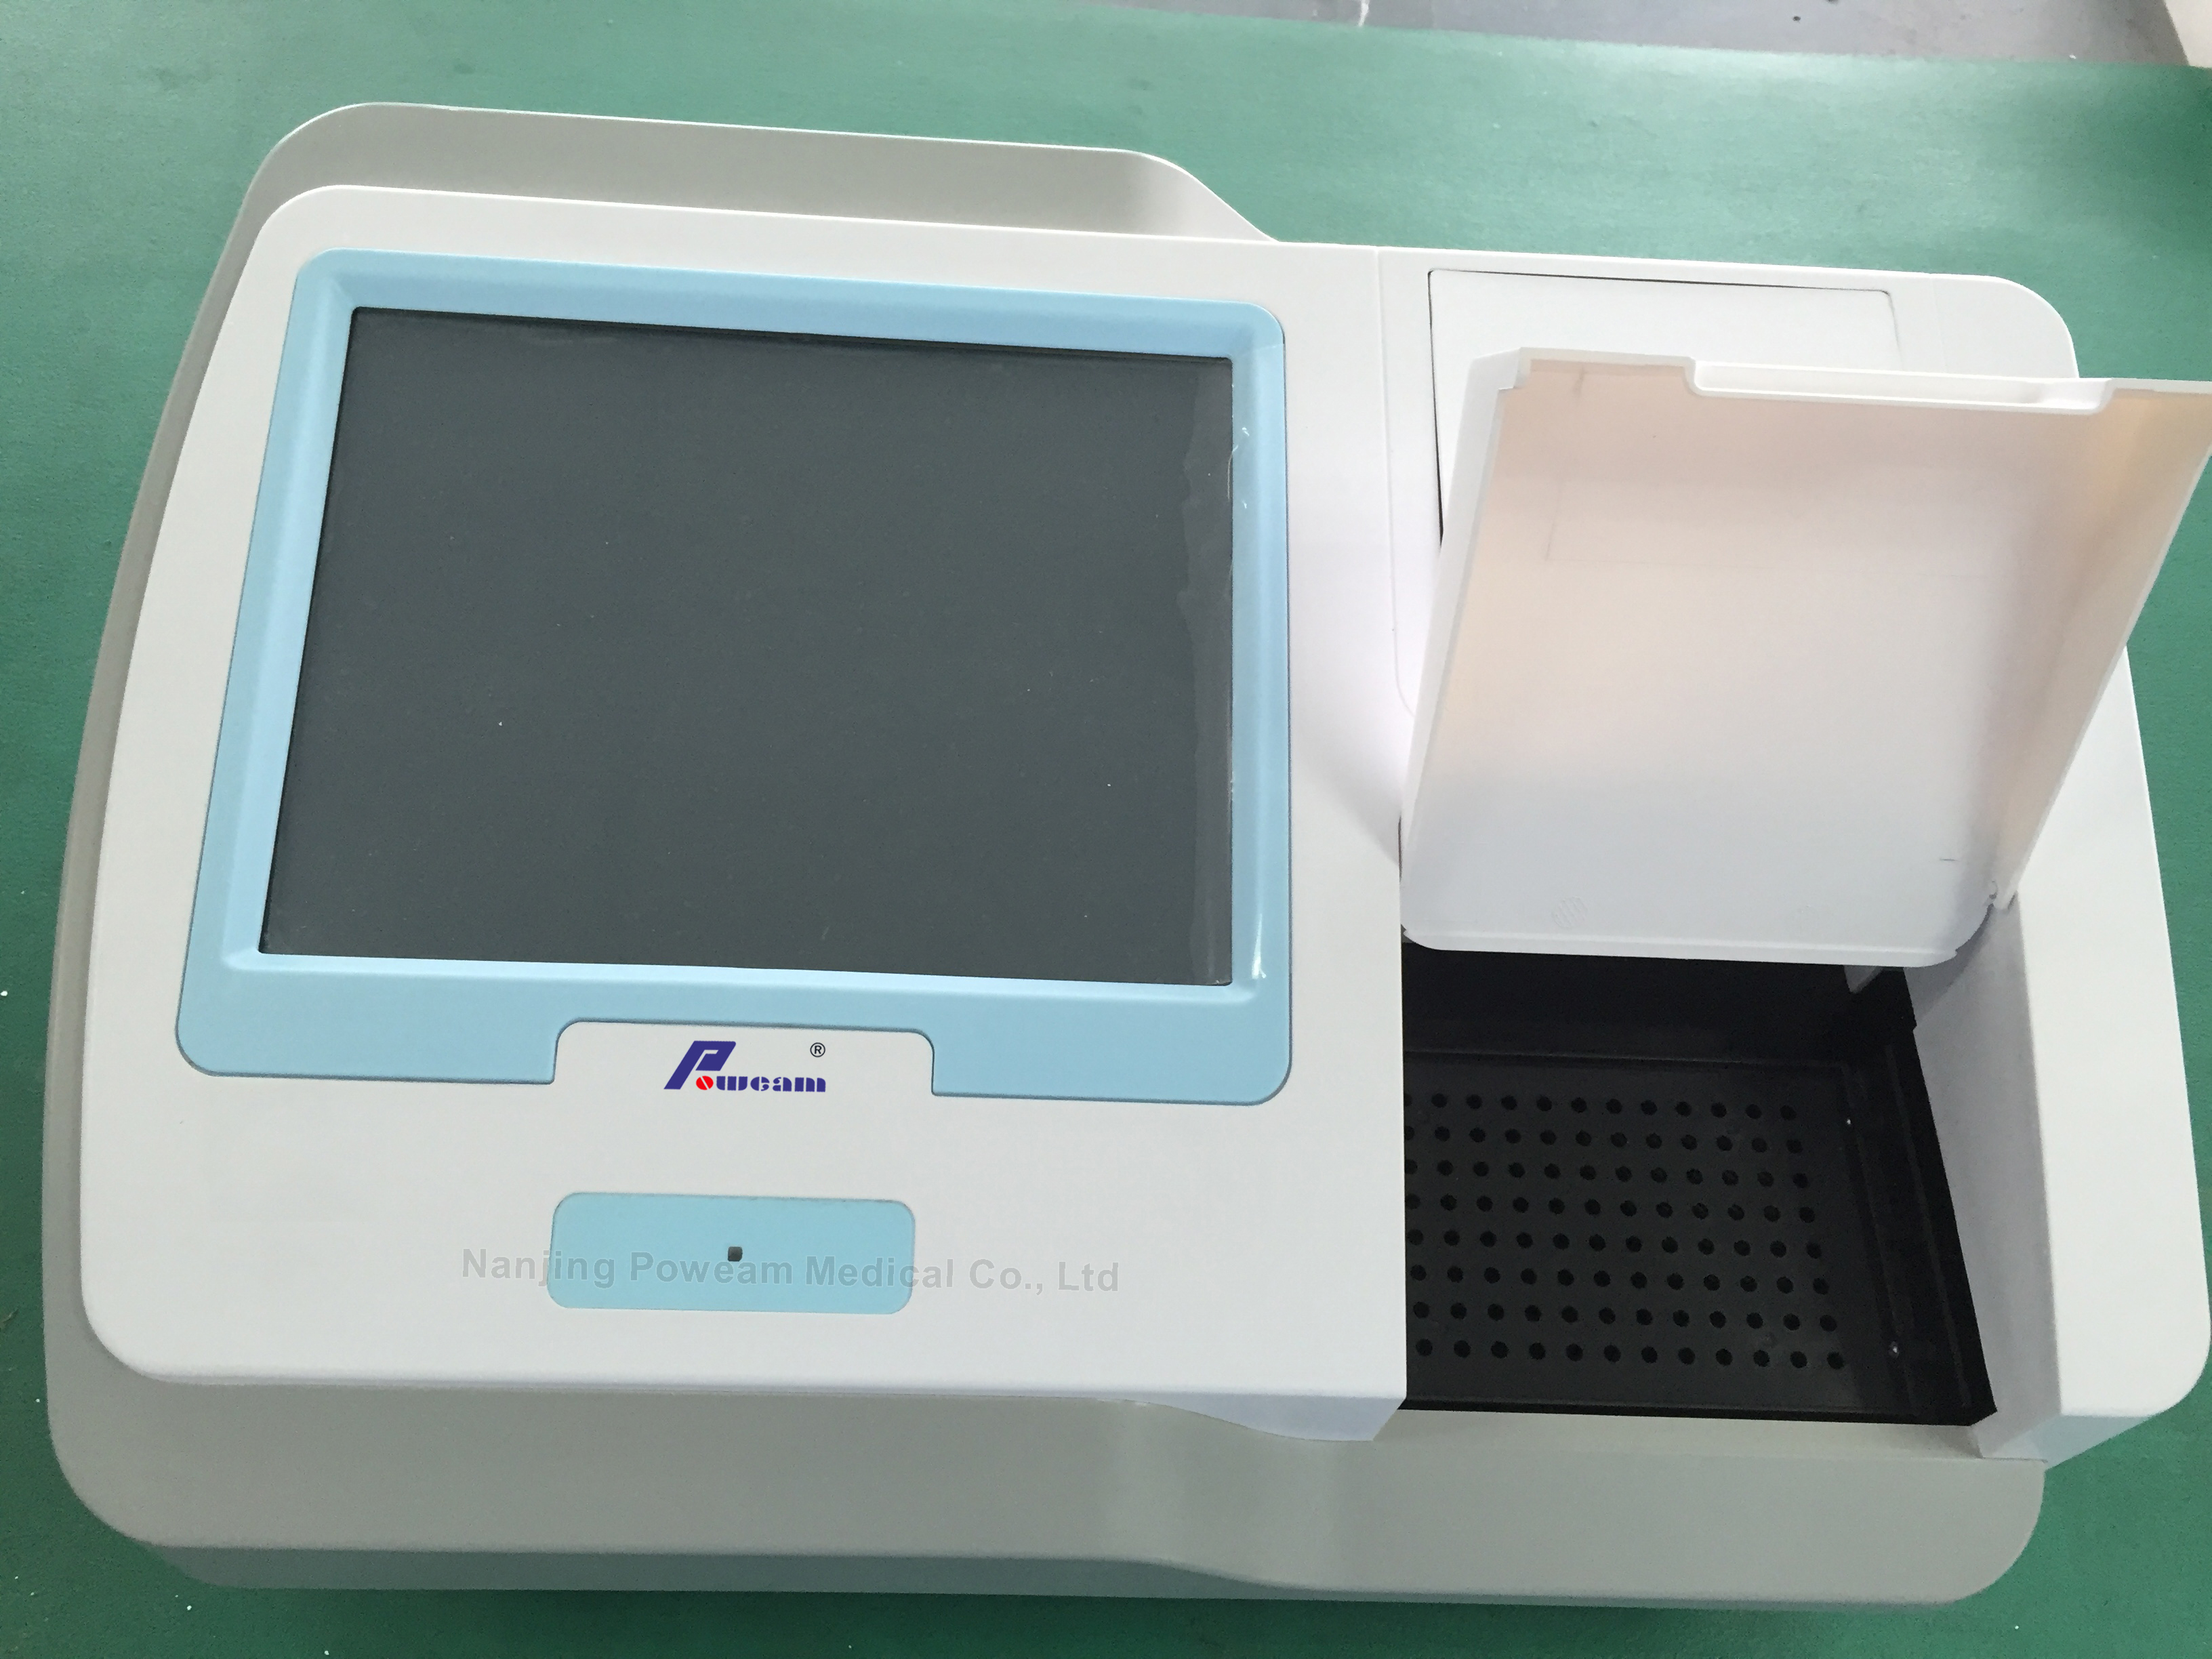 Mikroplattenleser / ELISA-Mikroplattenleser für Labor-Verwendung (Whym101B)